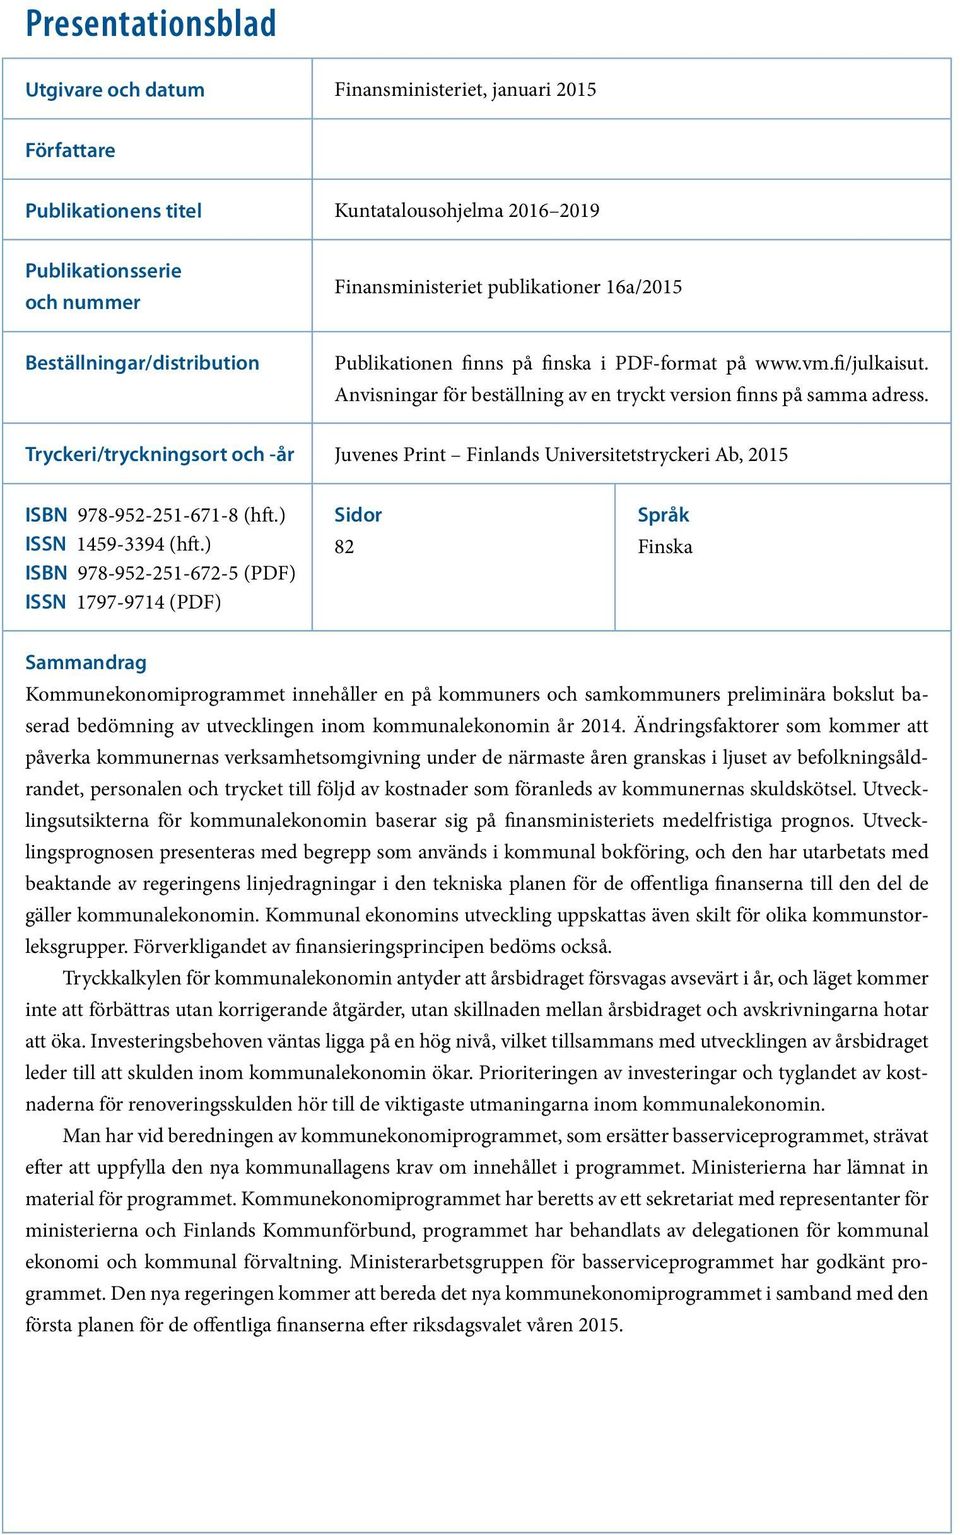 Tryckeri/tryckningsort och -år Juvenes Print Finlands Universitetstryckeri Ab, 2015 ISBN 978-952-251-671-8 (hft.) ISSN 1459-3394 (hft.